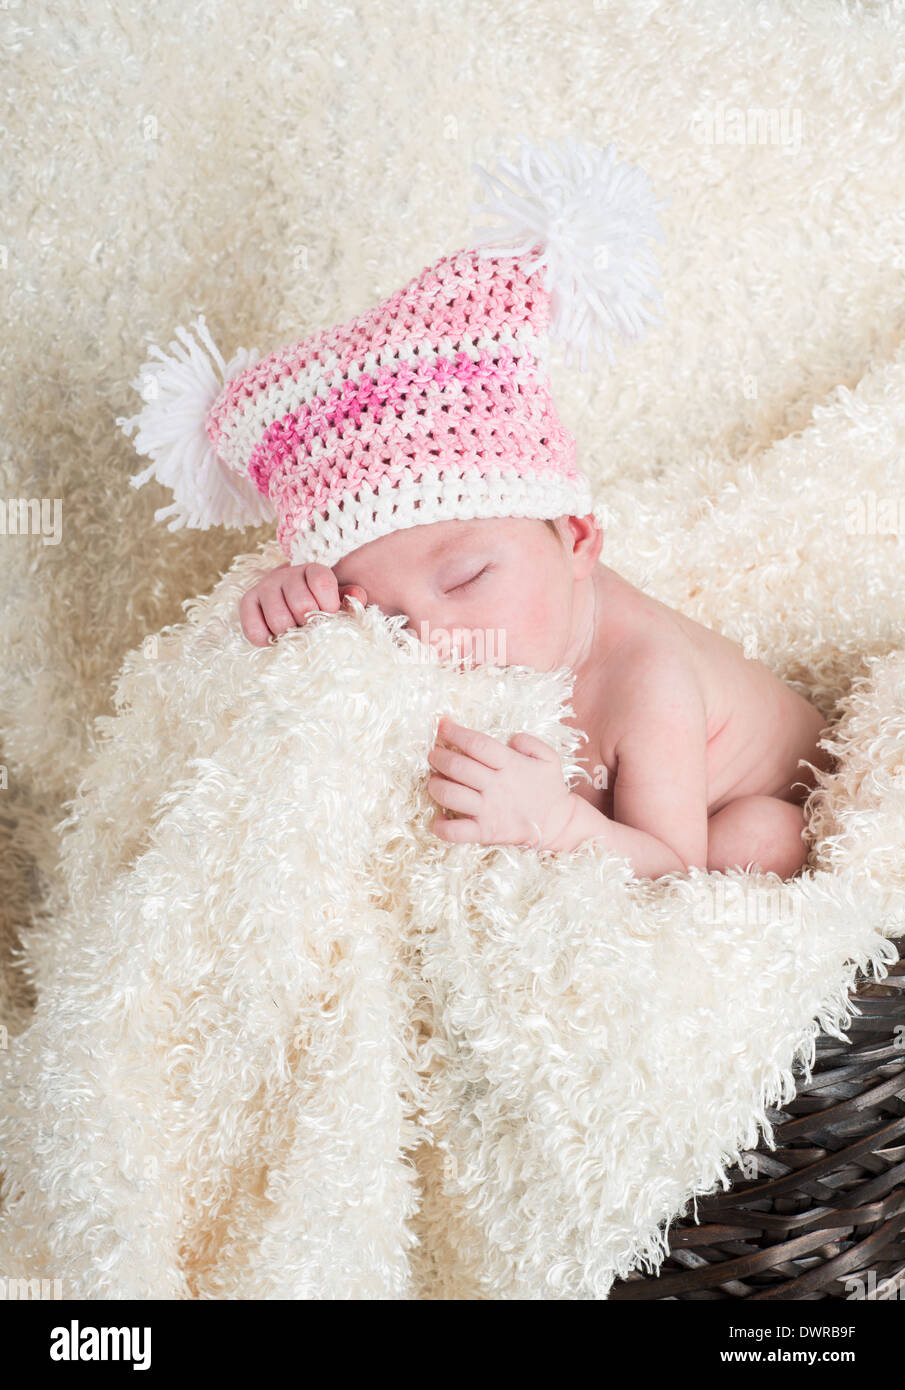 Hermoso bebé recién nacido vistiendo un sombrero de color rosa con blanco  pom poms durmiendo en una cesta tejida marrón sobre una manta suave color  crema Fotografía de stock - Alamy